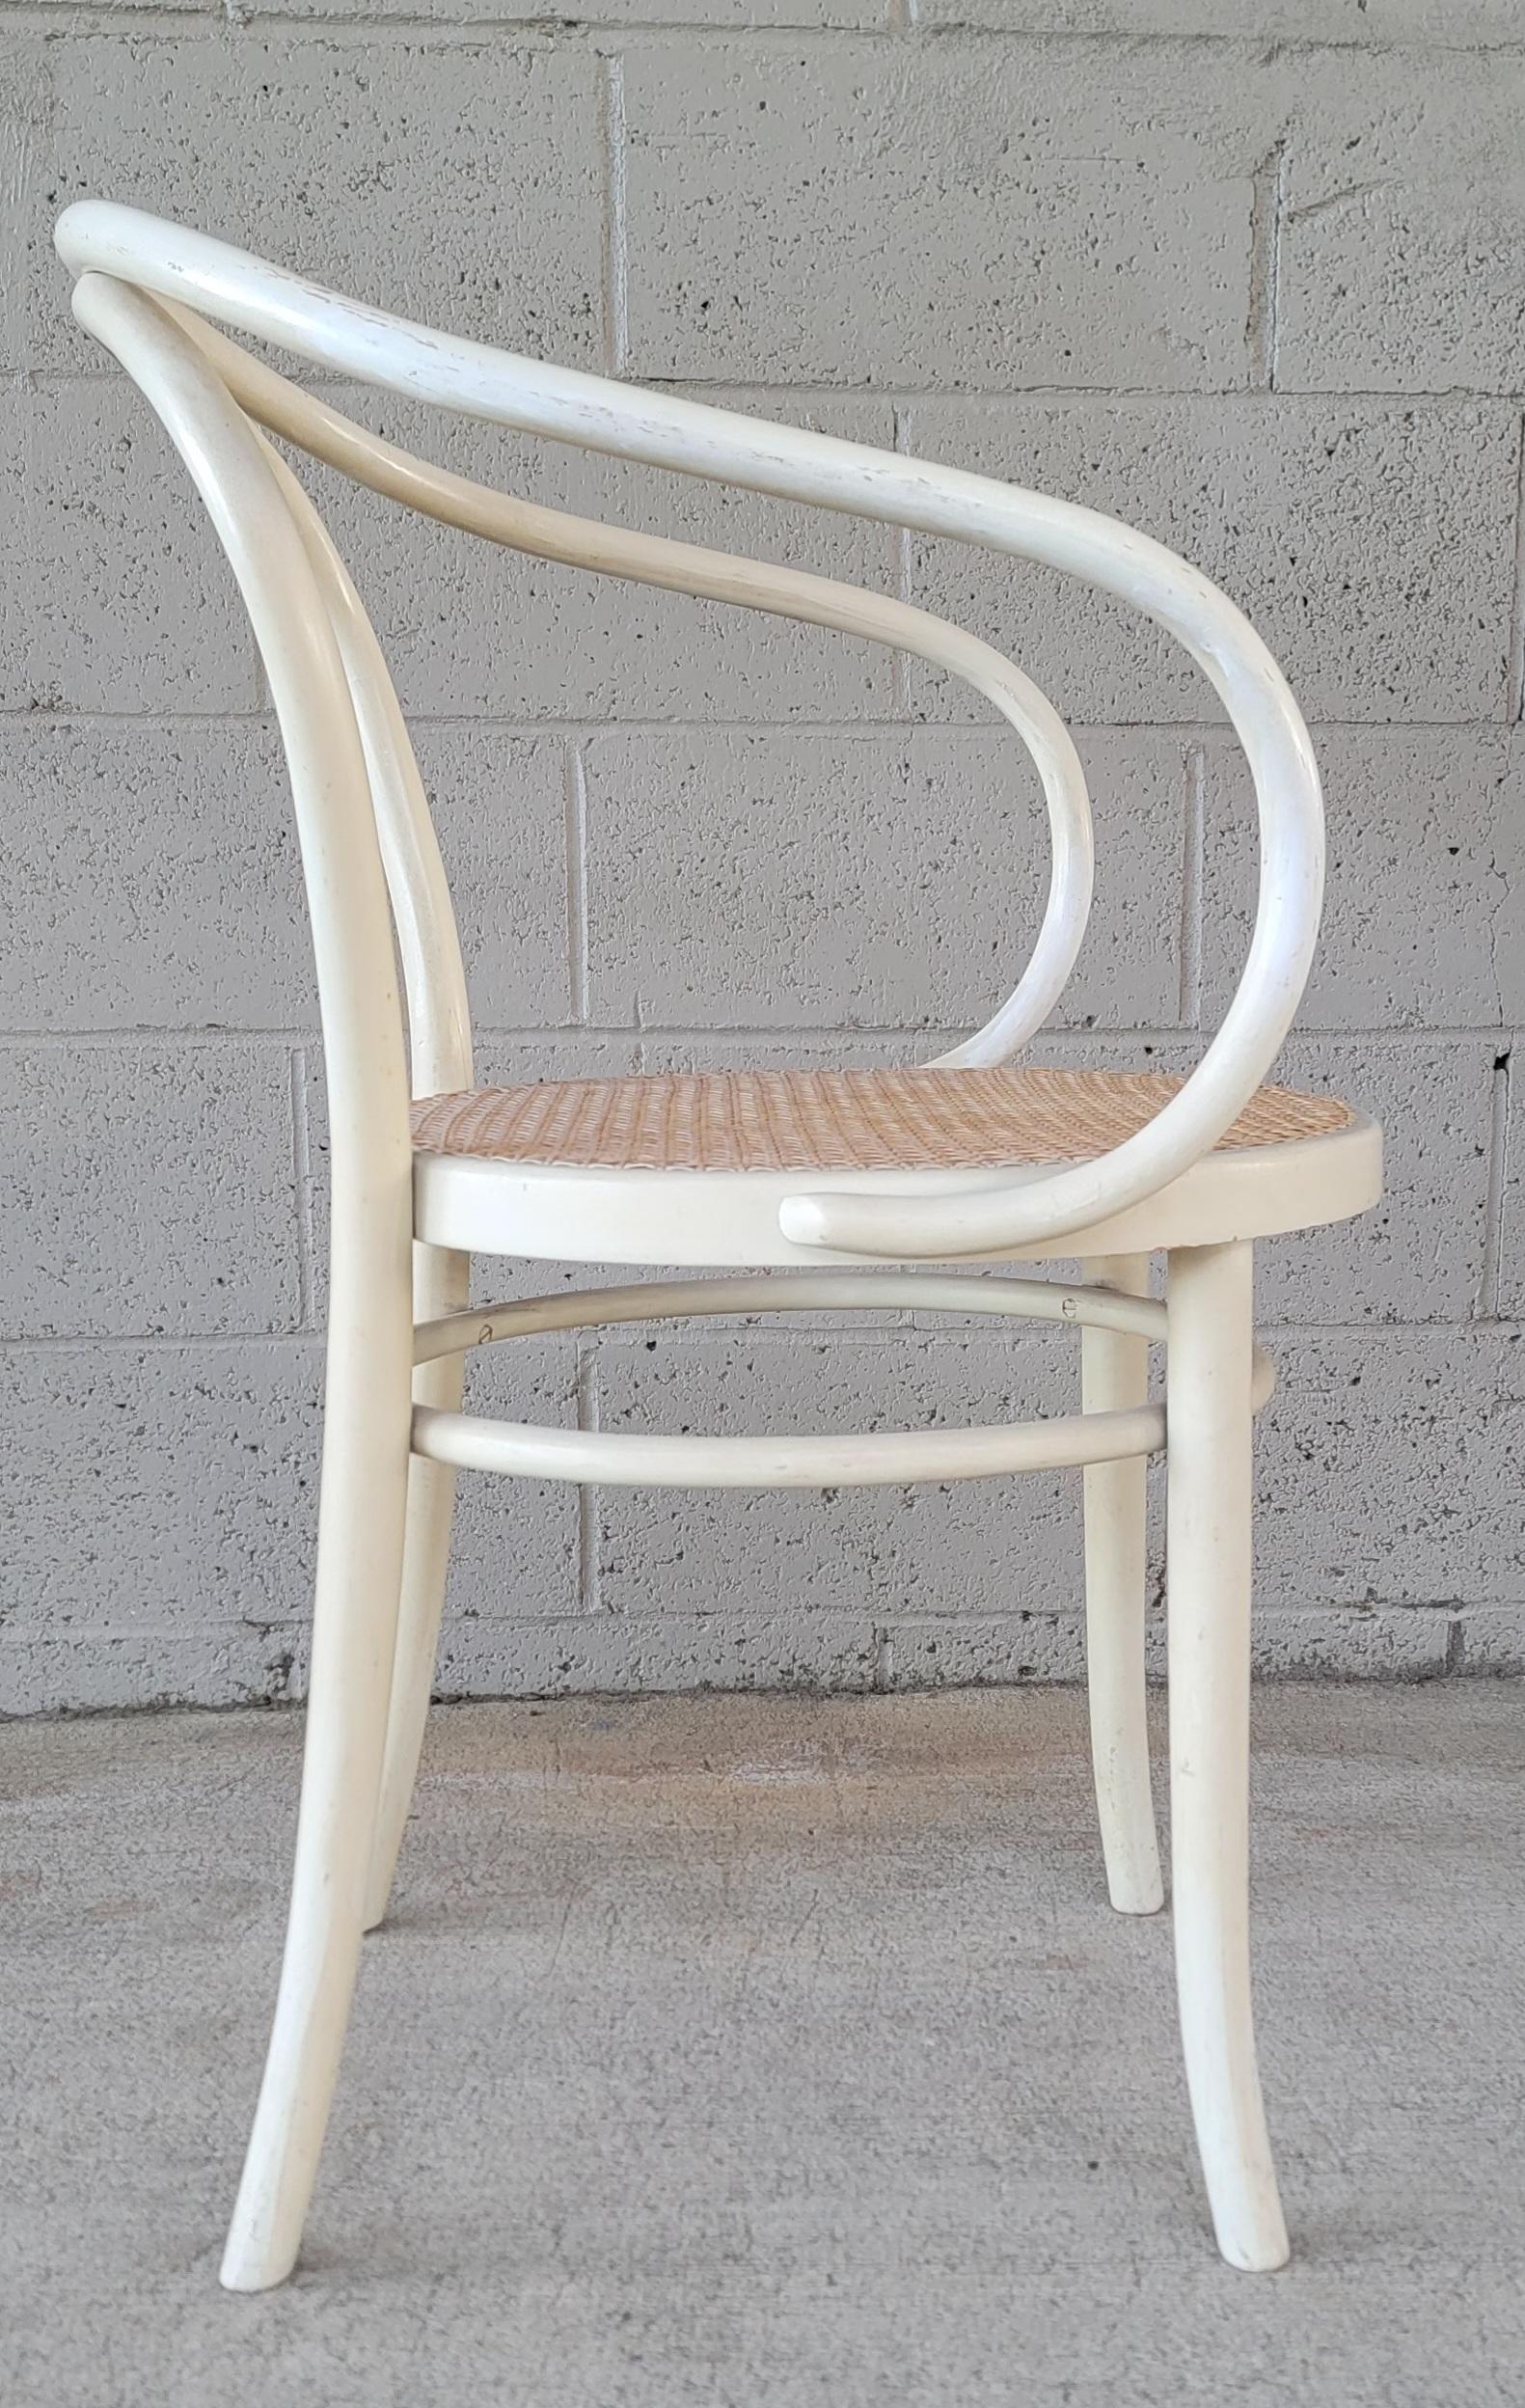 Sessel aus Bugholz mit Sitz aus Schilfrohr und weißer Lackierung. Zugeschrieben dem Wiener Stuhl für Thonet. Anmutiges, skulpturales Design. Strukturell solide. Leichte Abnutzungserscheinungen durch Alter und Gebrauch.